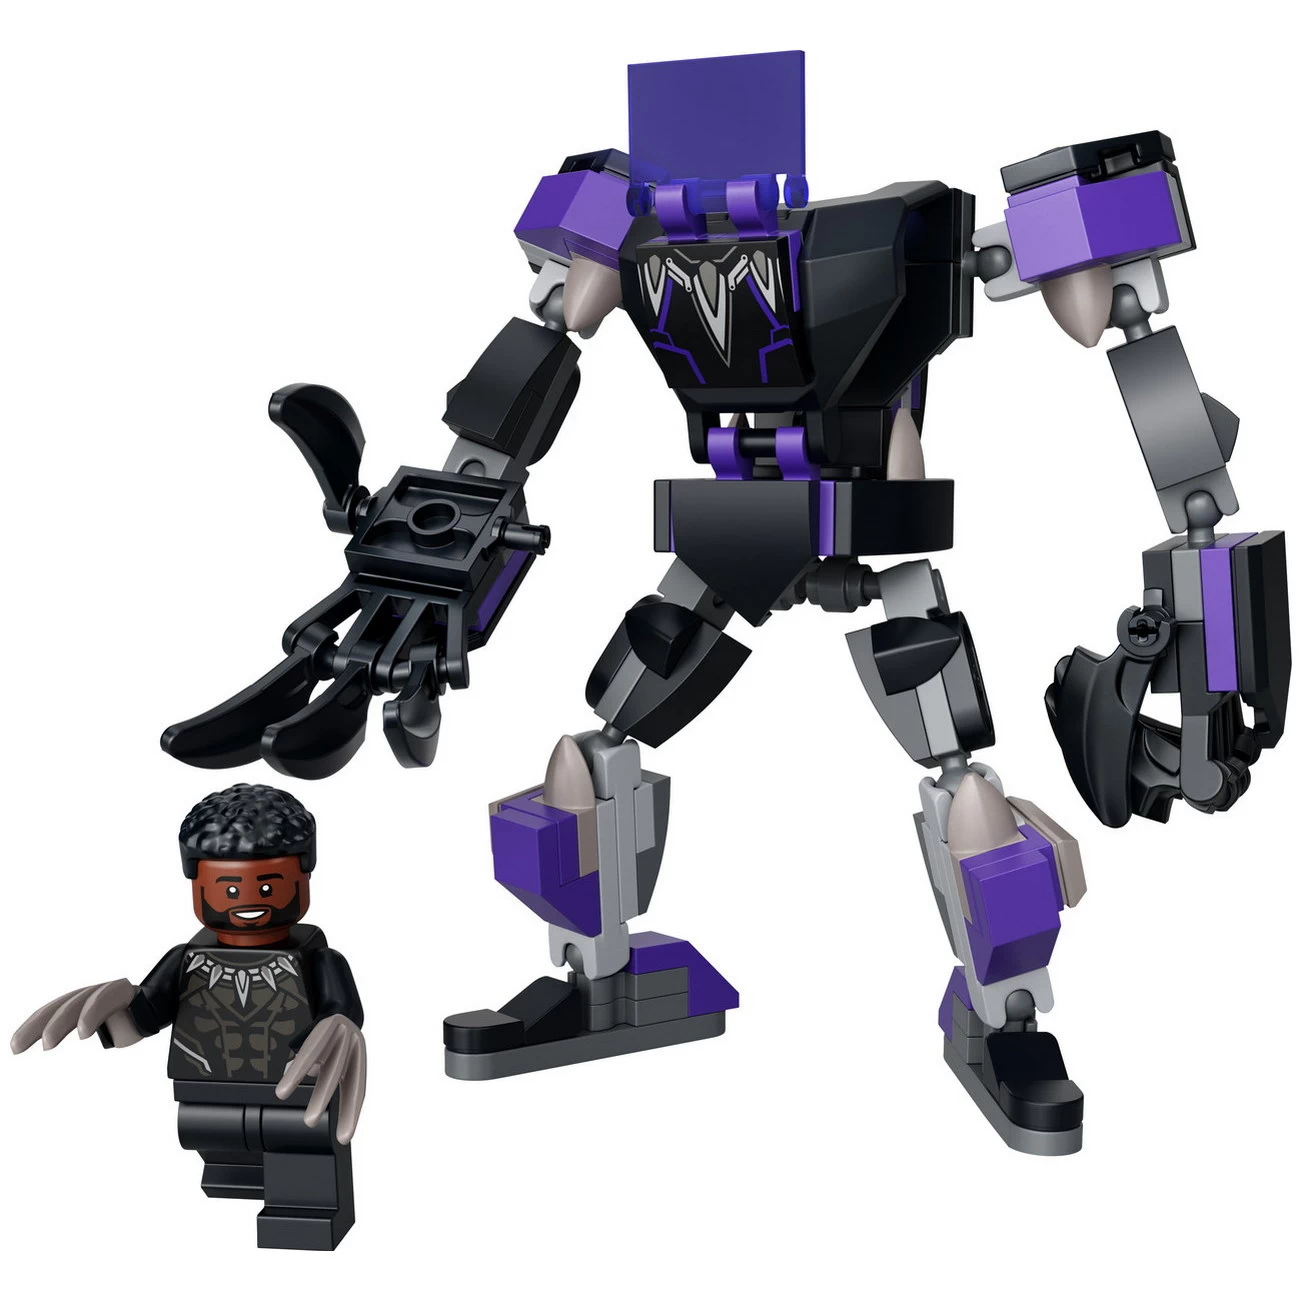 LEGO Marvel 76204 - Black Panther Mech